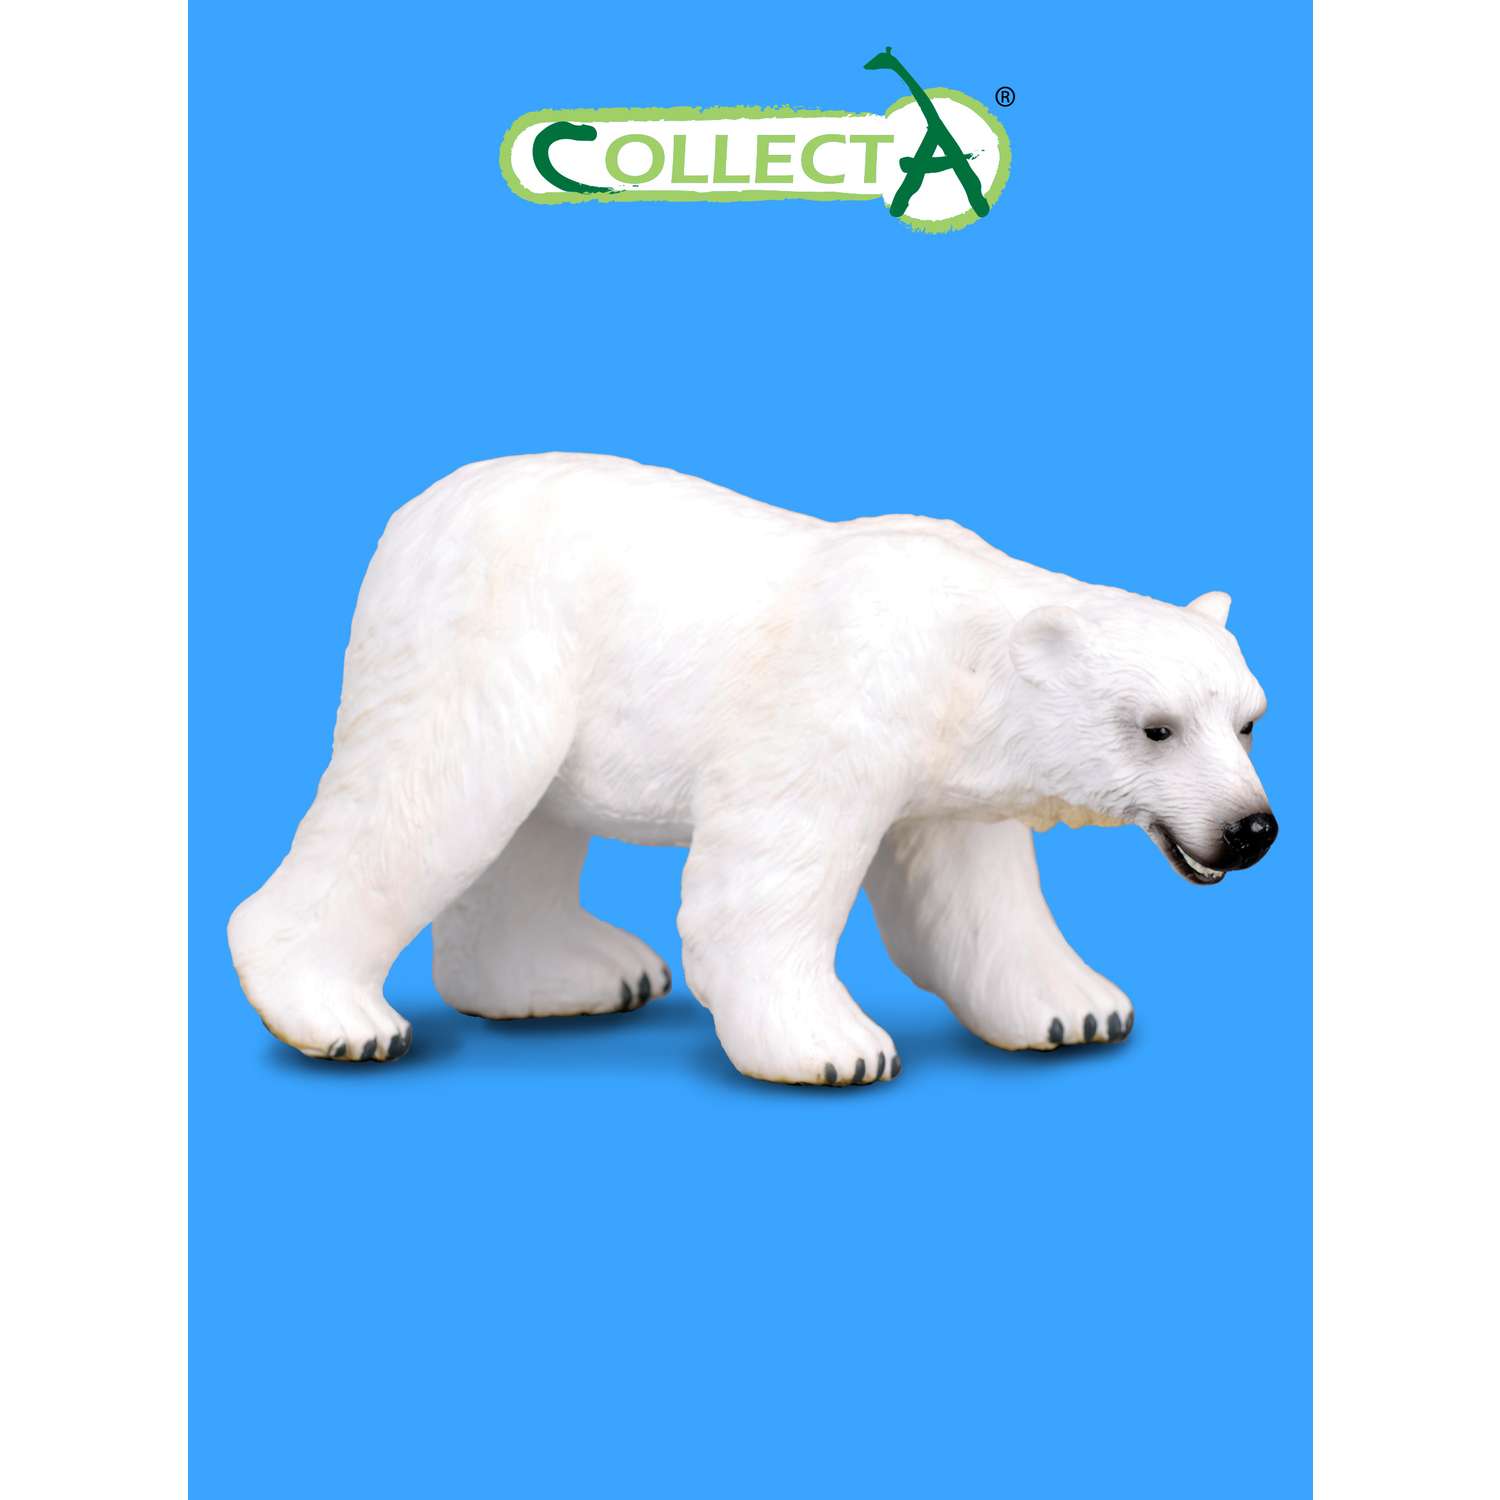 Фигурка животного Collecta Полярный медведь - фото 1